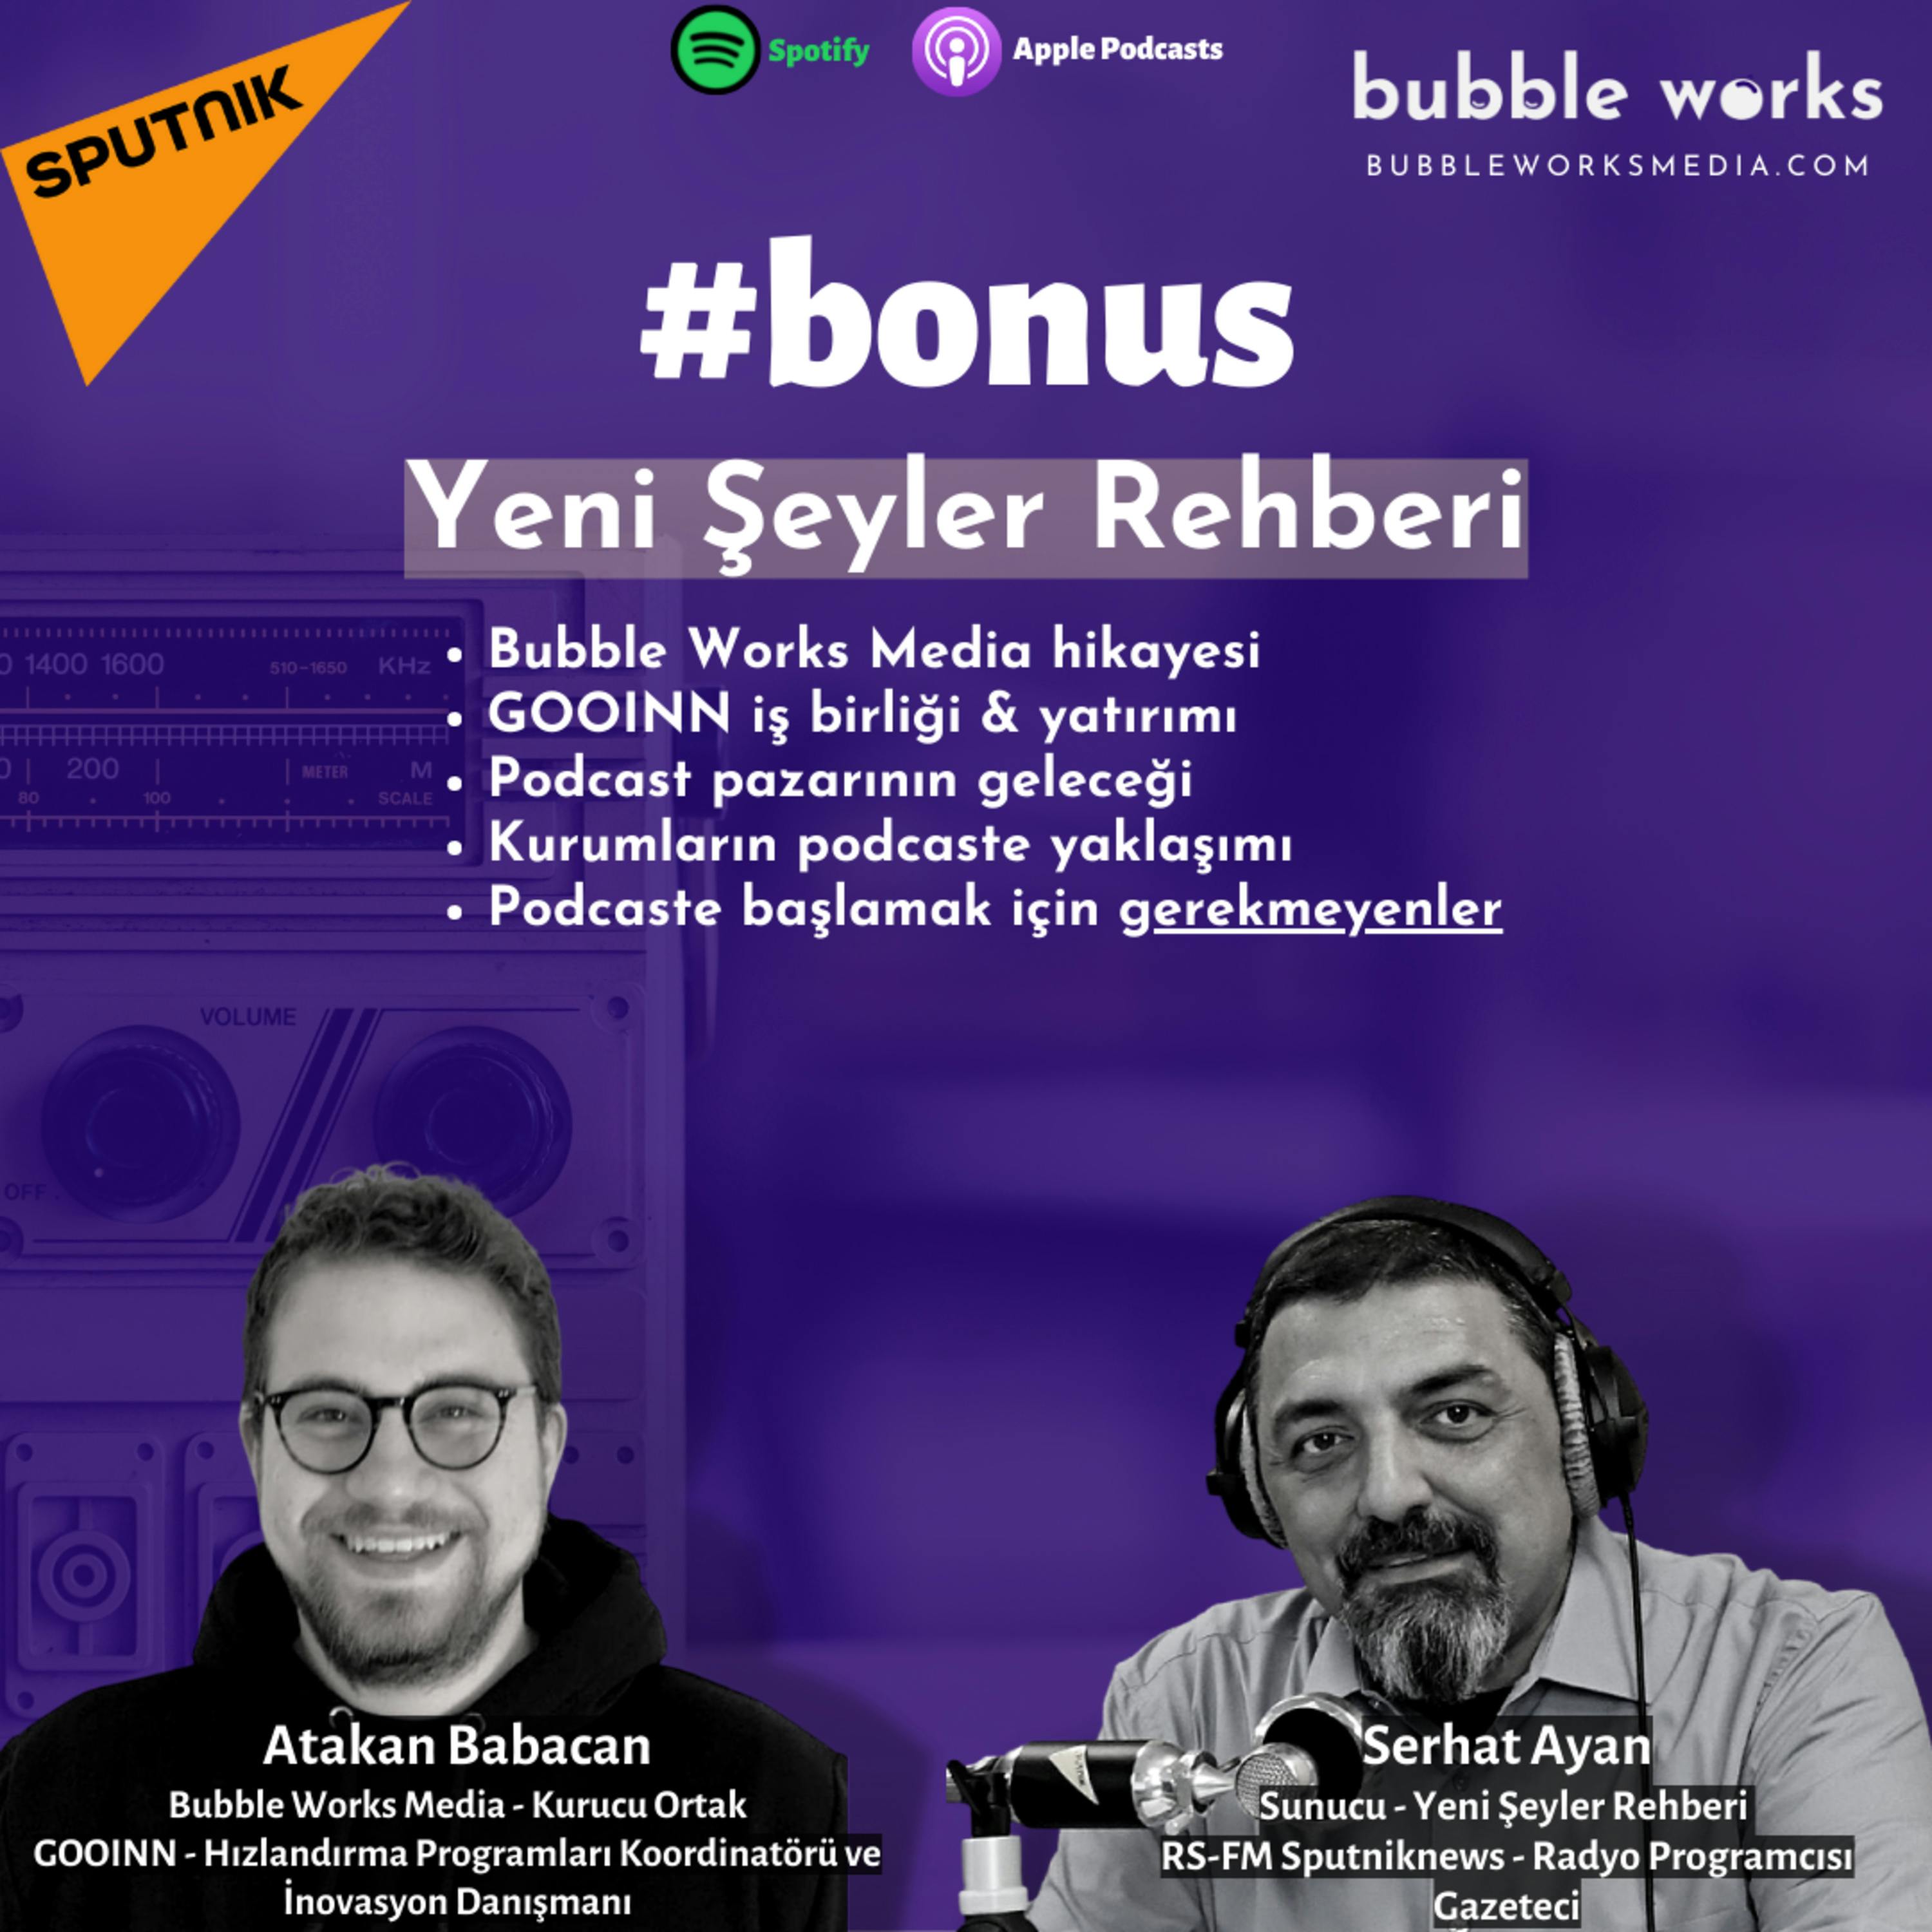 #bonus Bubble Works Media kurucularımızdan Atakan Babacan, kurumların podcastlere yaklaşımını Serhat Ayan'ın sunduğu Sputniknews Radyo RS Fm'de yayınlanan Yeni Şeyler Rehberi programında a